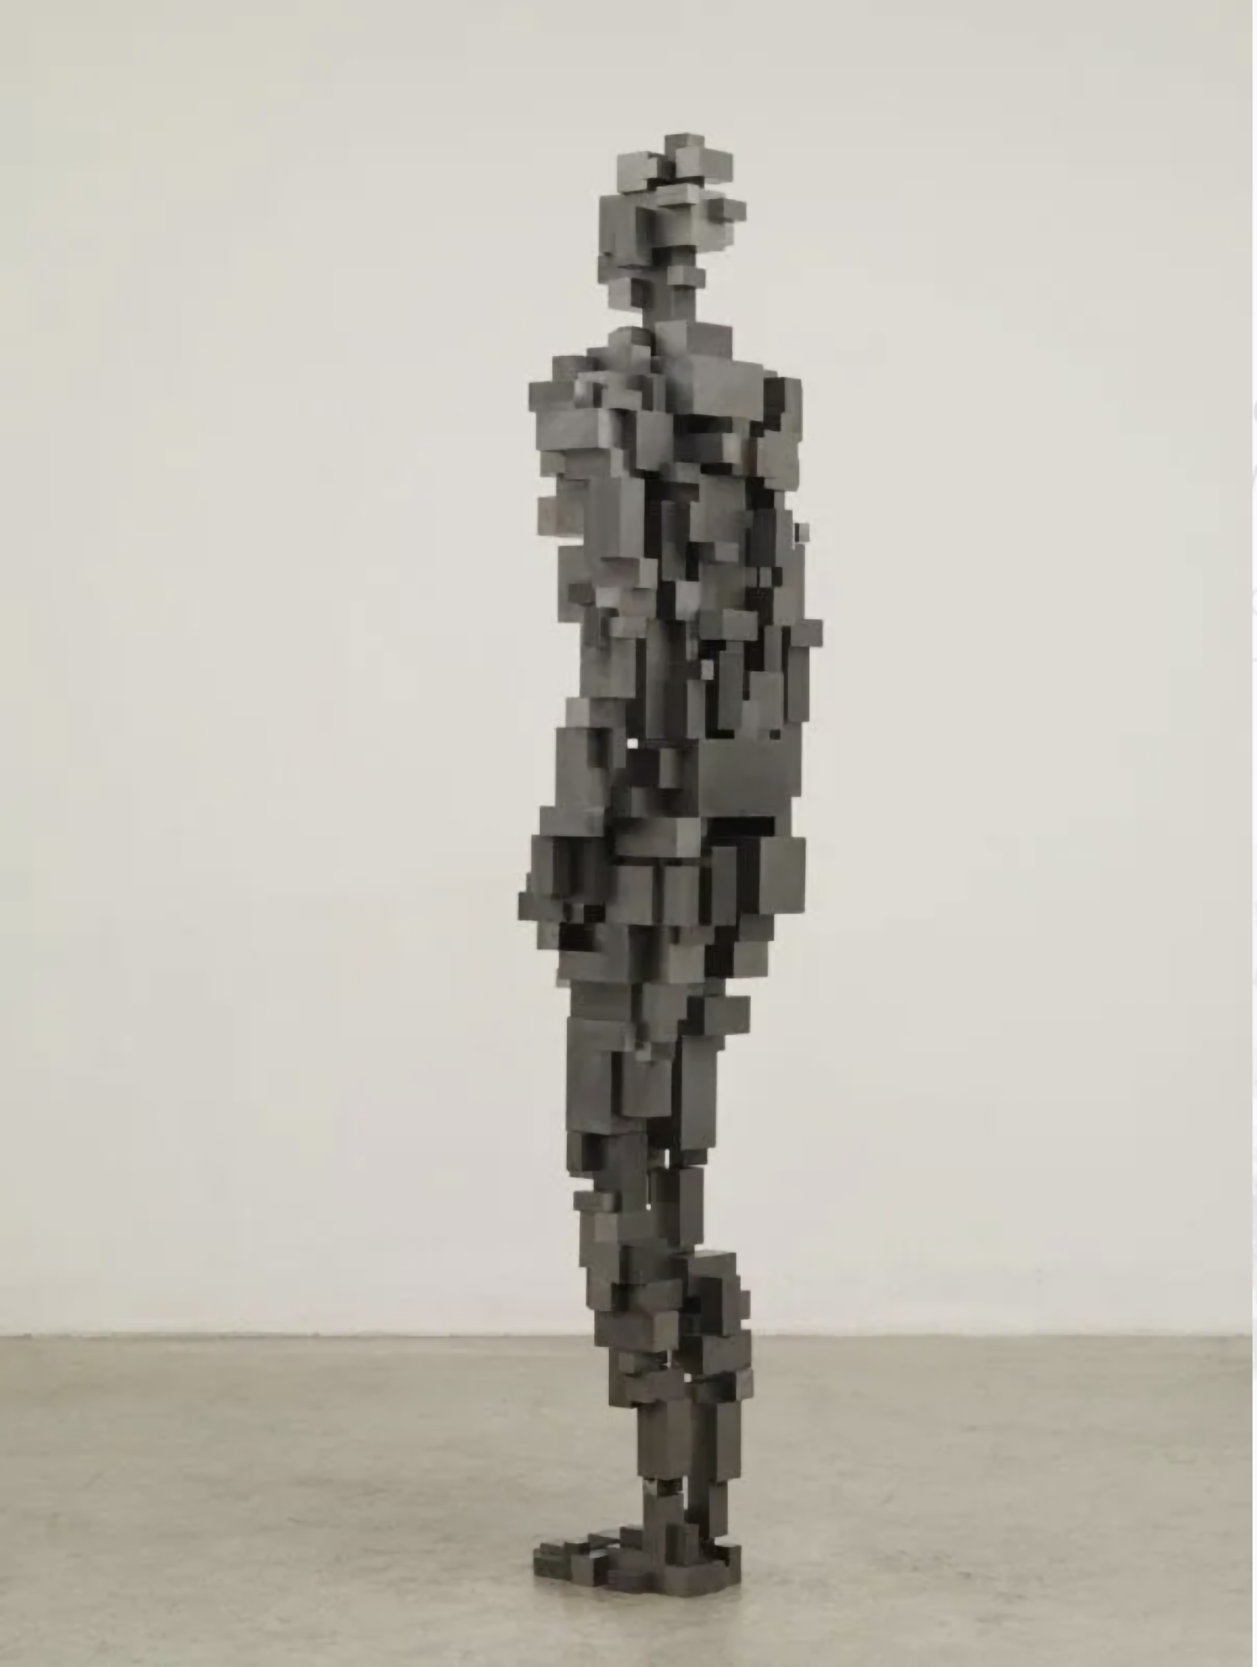 Antony Gormley, Sublimate XXIII189.0 x 48.0 x 37.0 cm çelik bloklar: 12.5 x 12.5 x 25 mm, 25 x 25 x 50 mm, 37.5 x 37.5 x 75 mm, 50 x 50 x 100 mm, 75 x 75 x 150 mm, 100 x 100 x 200 mm Copyright: Sanatçının kendisi ve Bilgili Sanat izniyle